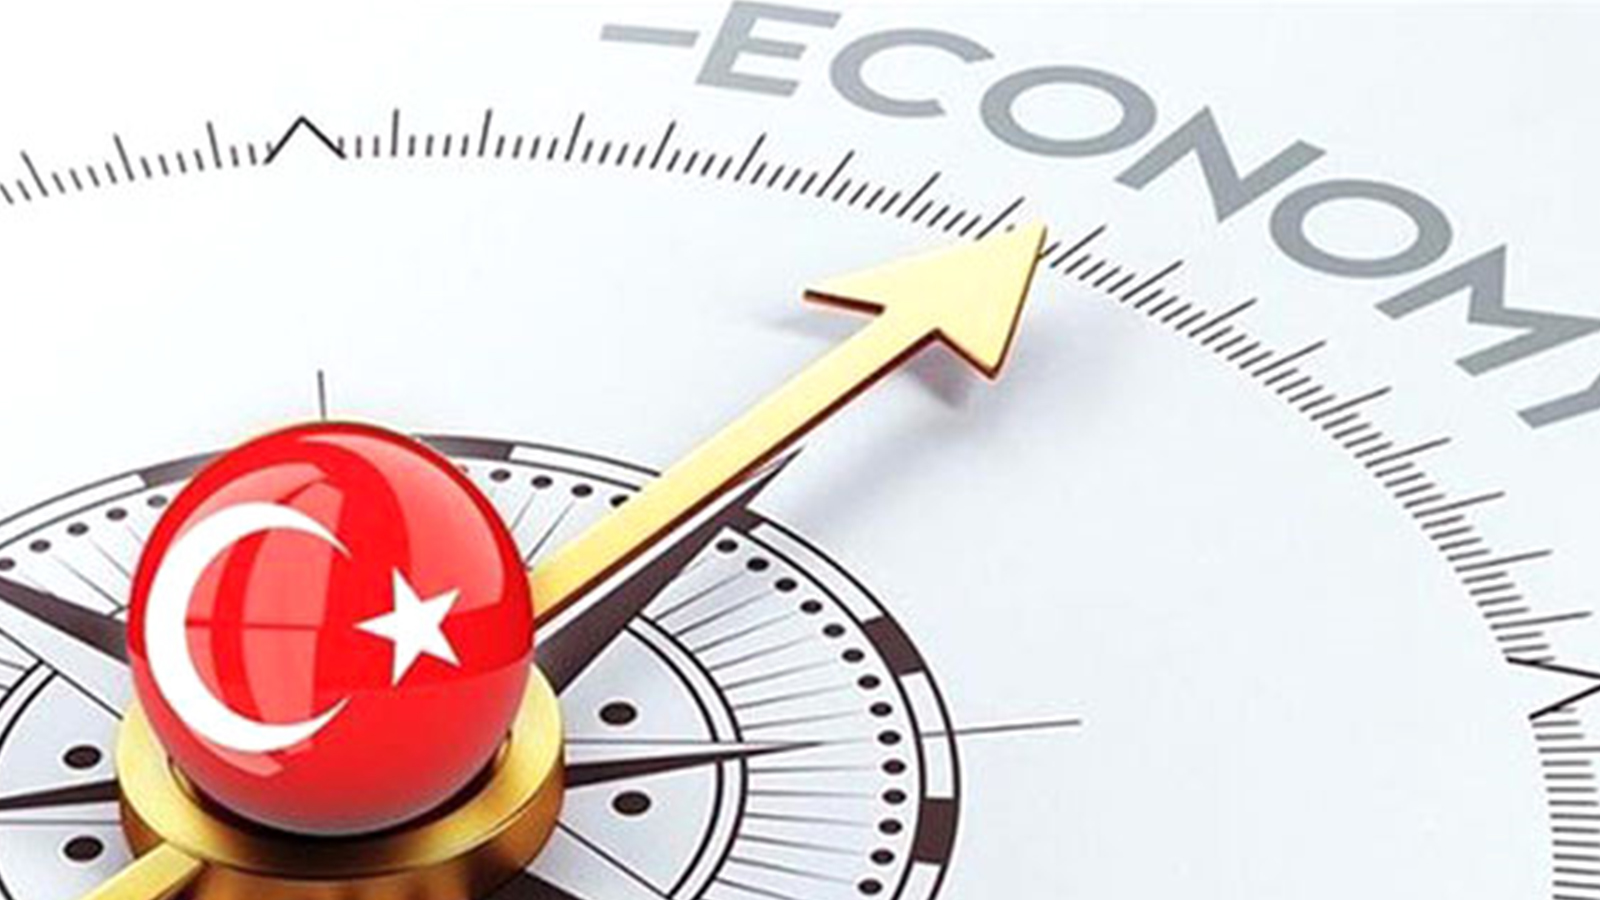 Ըստ բրիտանացի տնտեսագետի՝ Թուրքիայի տնտեսական վիճակը նմանվելու է Լիբանանի տնտեսության սարսափելի ճգնաժամին